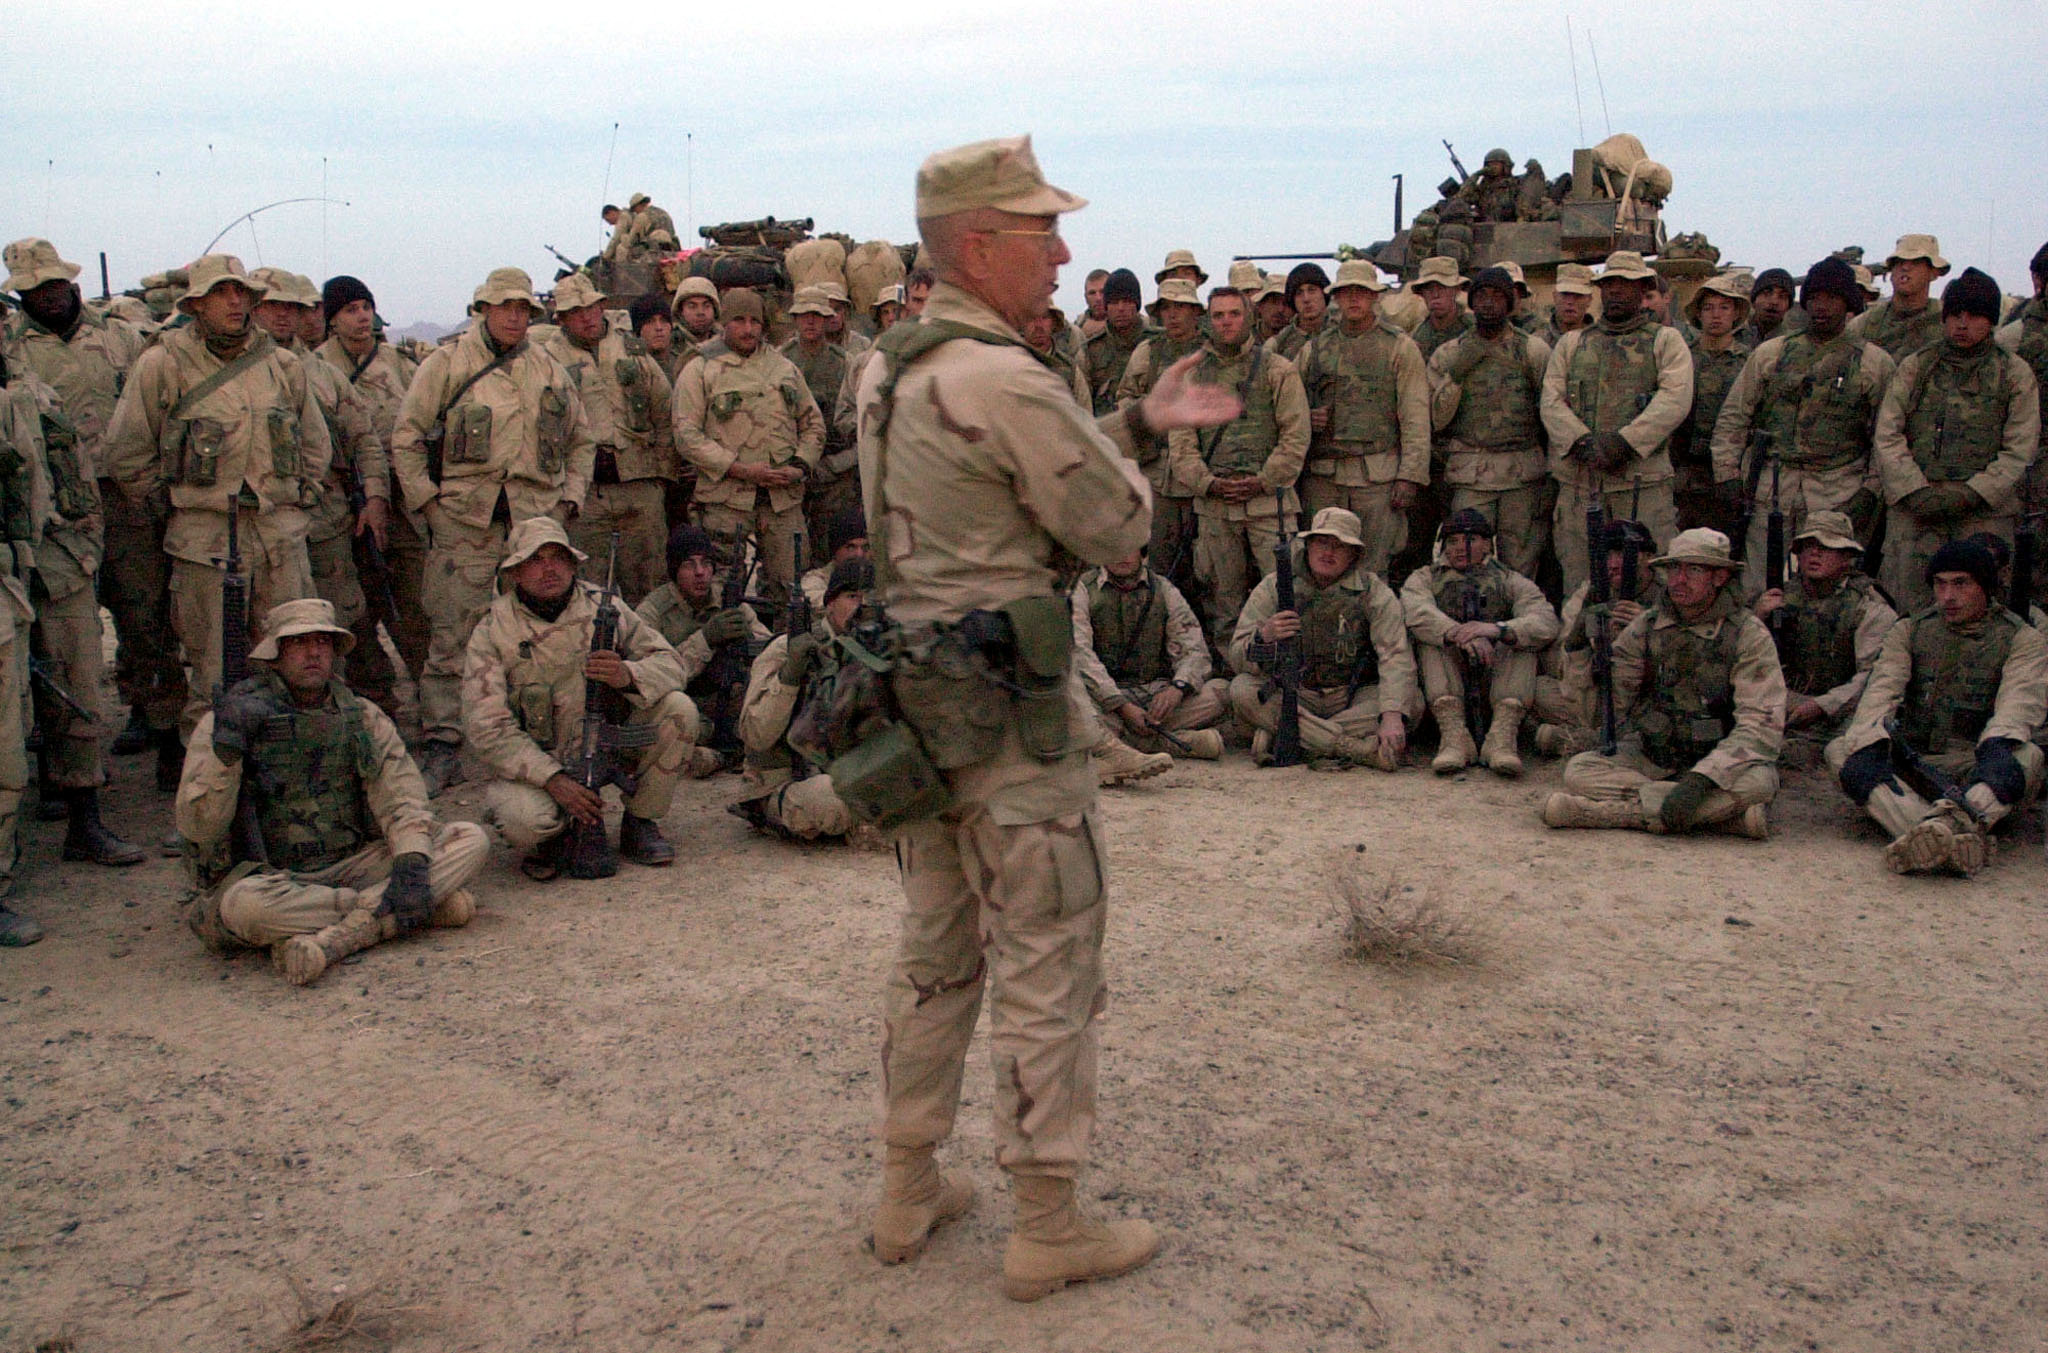 El general de brigada James Mattis conversa con los infantes de marina estadounidenses de la 15ª y 26ª Unidad Expedicionaria de los Marines antes de partir en un convoy de más de 40 vehículos desde un área de estacionamiento para tomar el control del aeródromo en Kandahar, Afganistán, el 14 de diciembre de 2001. (REUTERS/ Dave Martin / Foto de archivo)